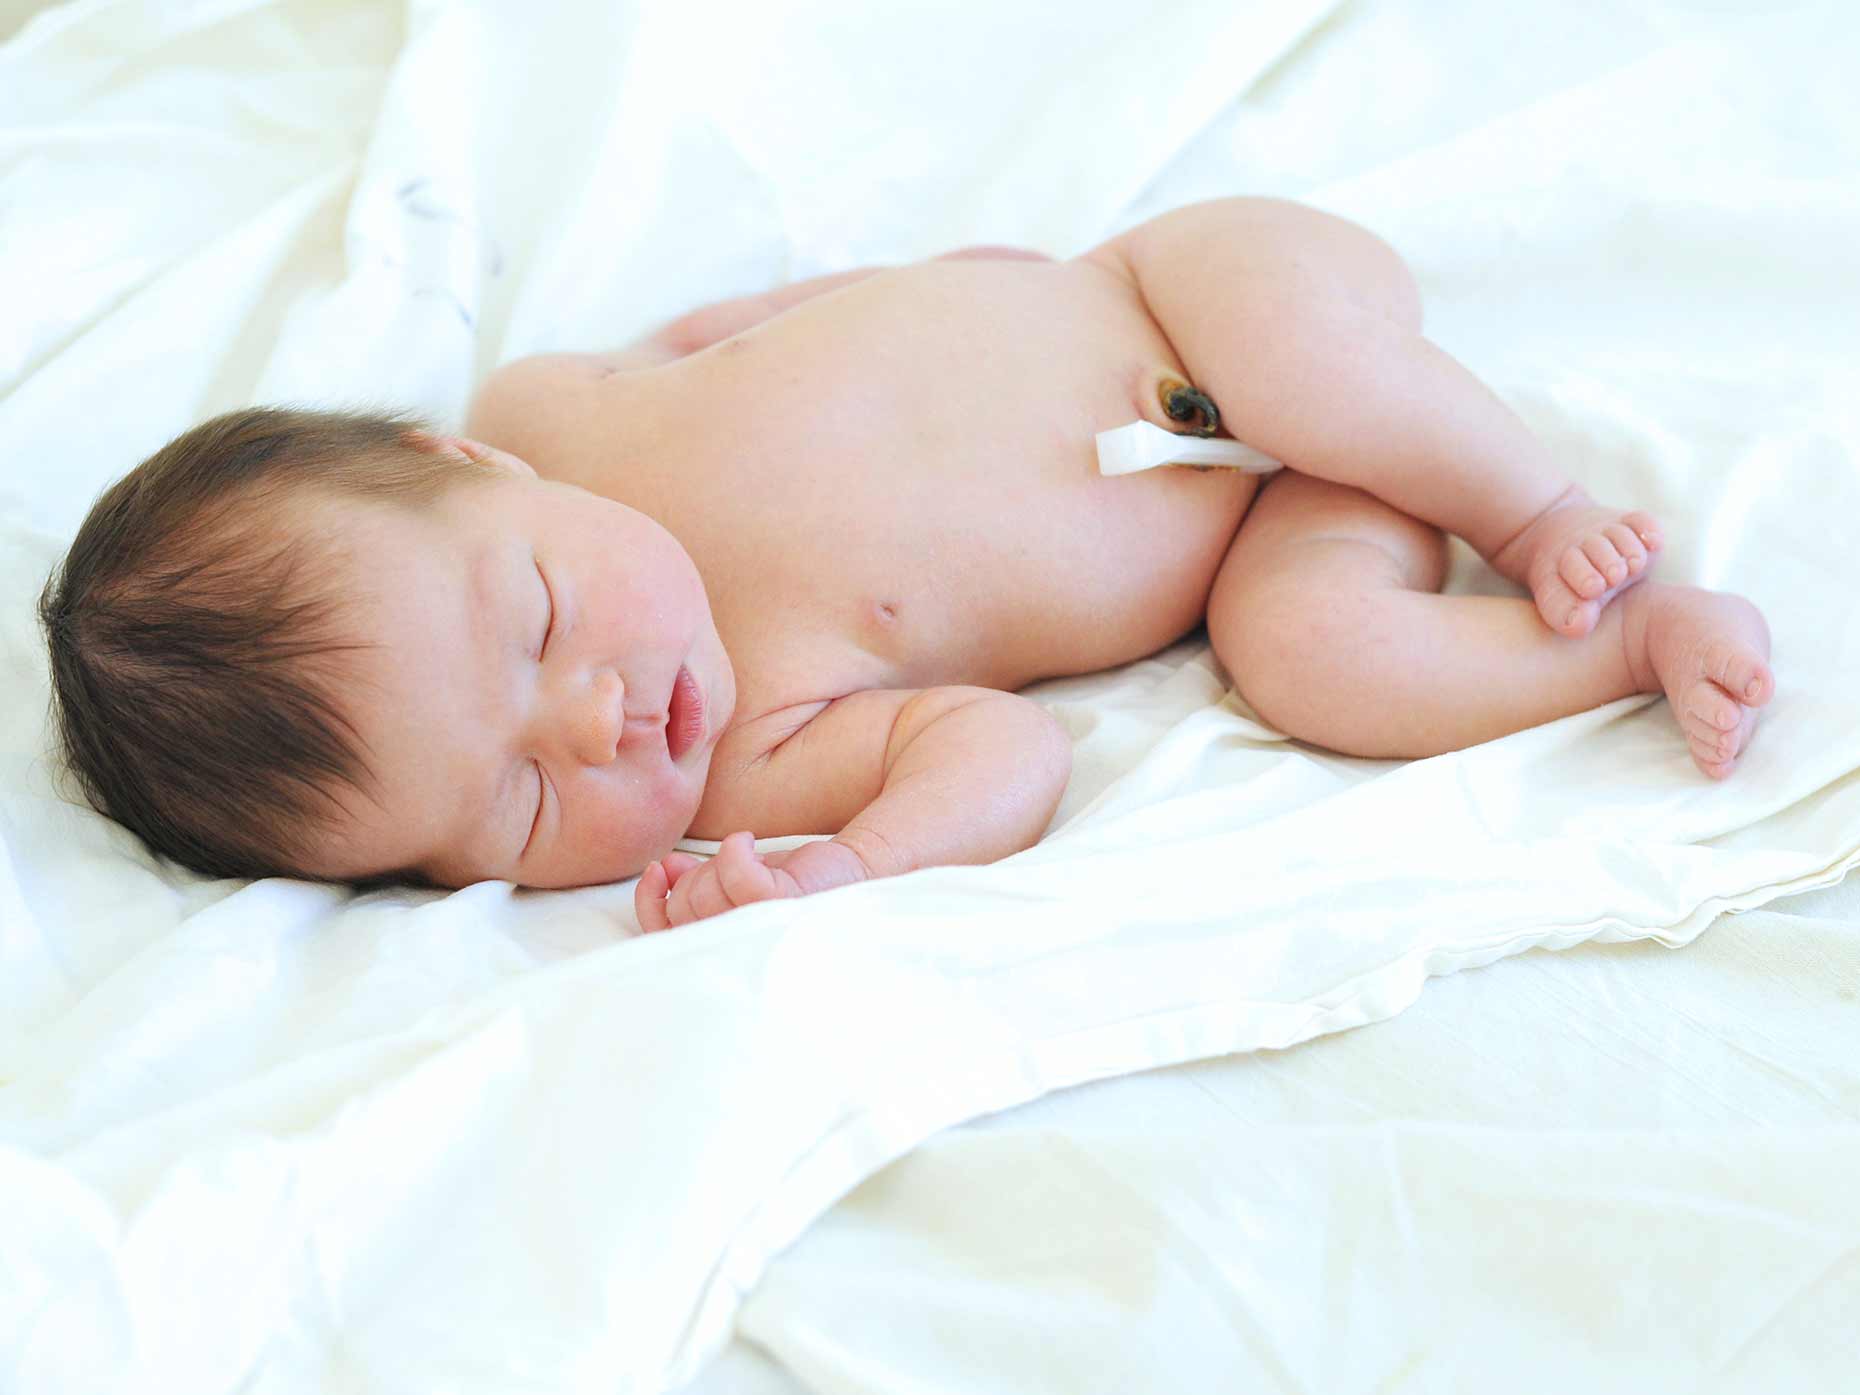 Come medicare il moncone ombelicale del neonato - Amico Pediatra